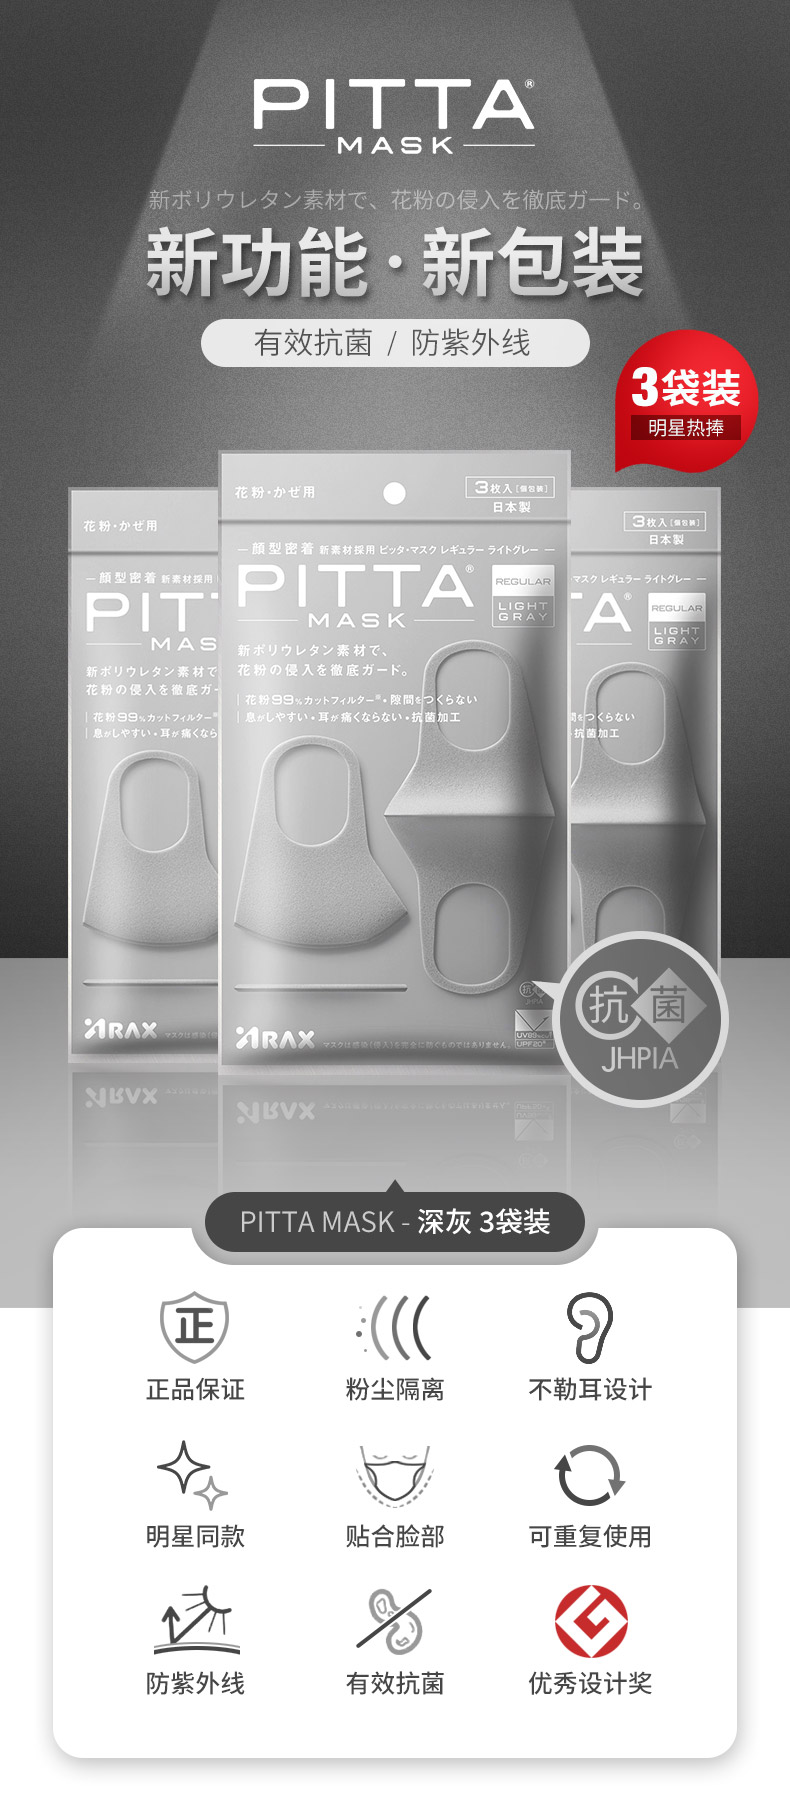 【特價回饋】【日本直郵】 日本PITTA MASK 立體防塵防花粉口罩 斷貨爆品明星著用款 #亮灰色 3枚裝